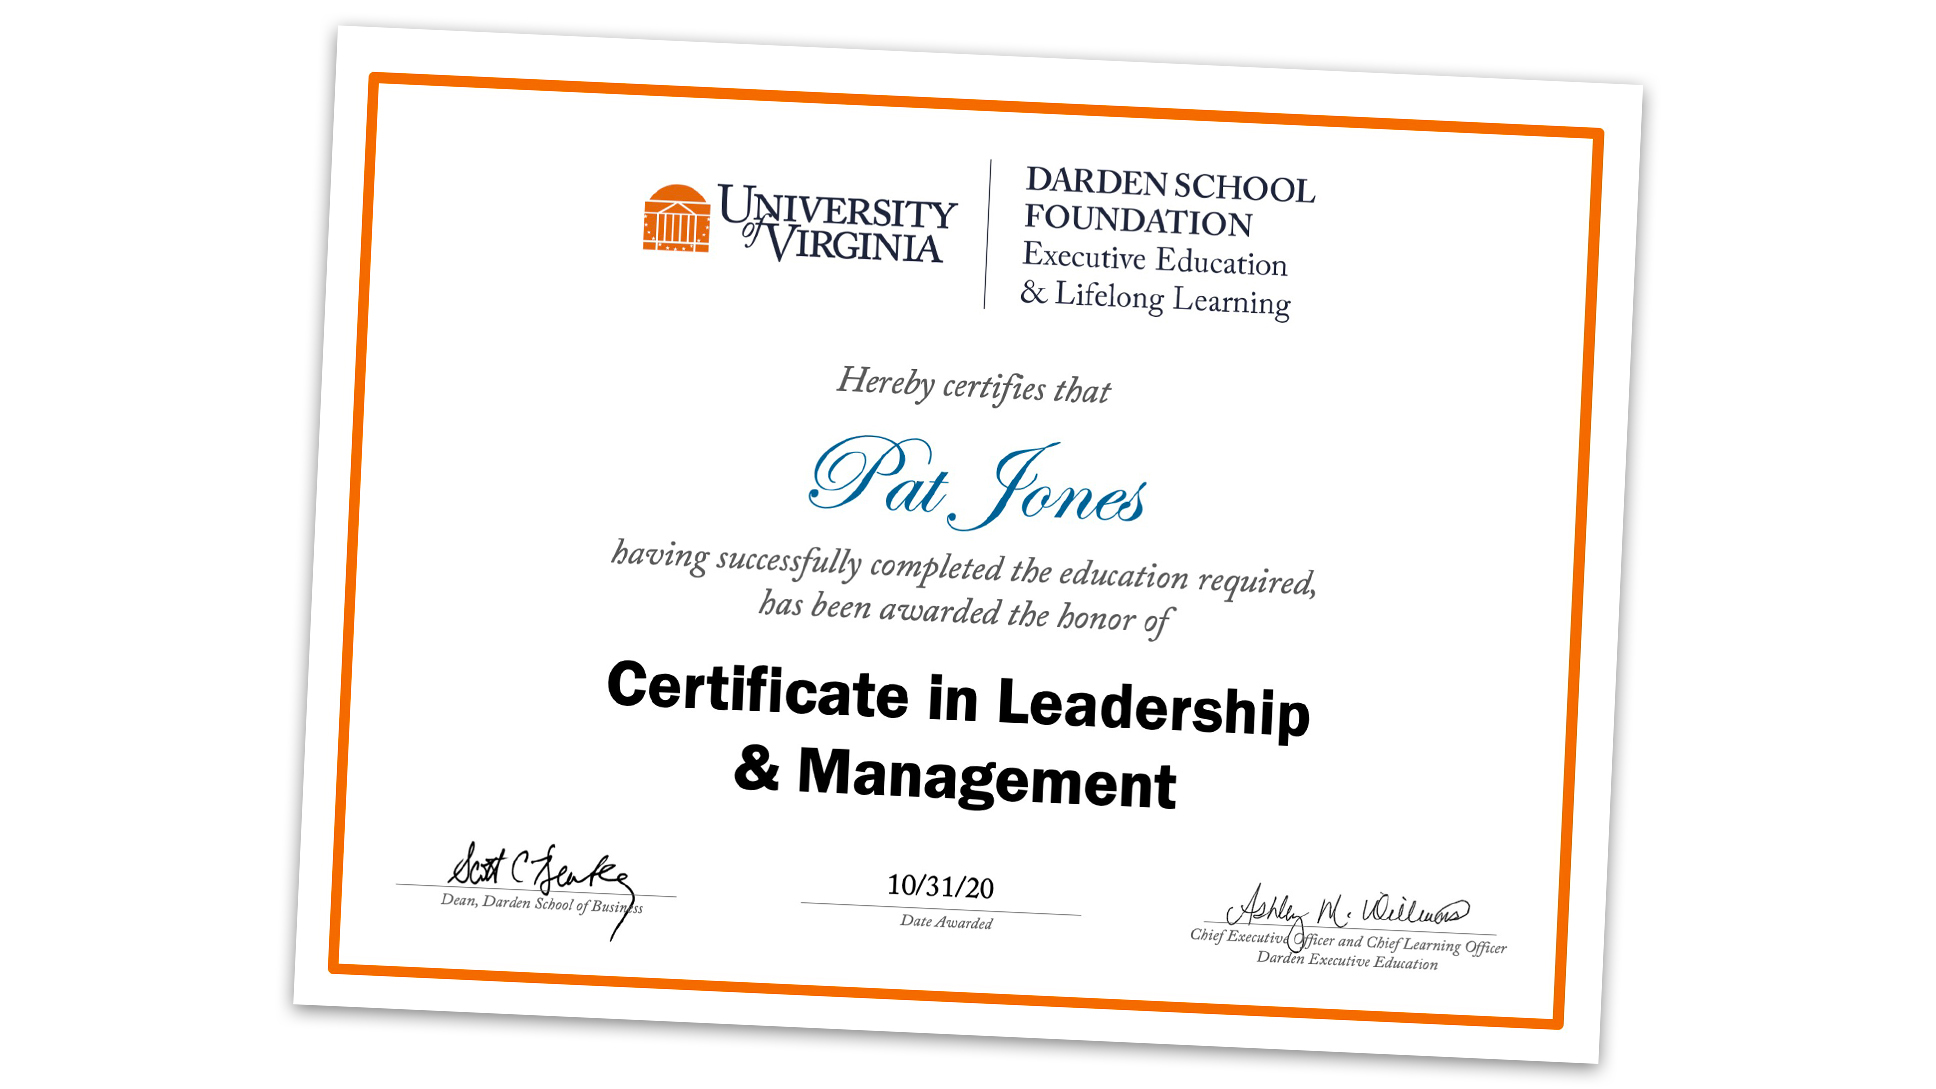 Certificate in Leadership Management UVA Darden School of Business